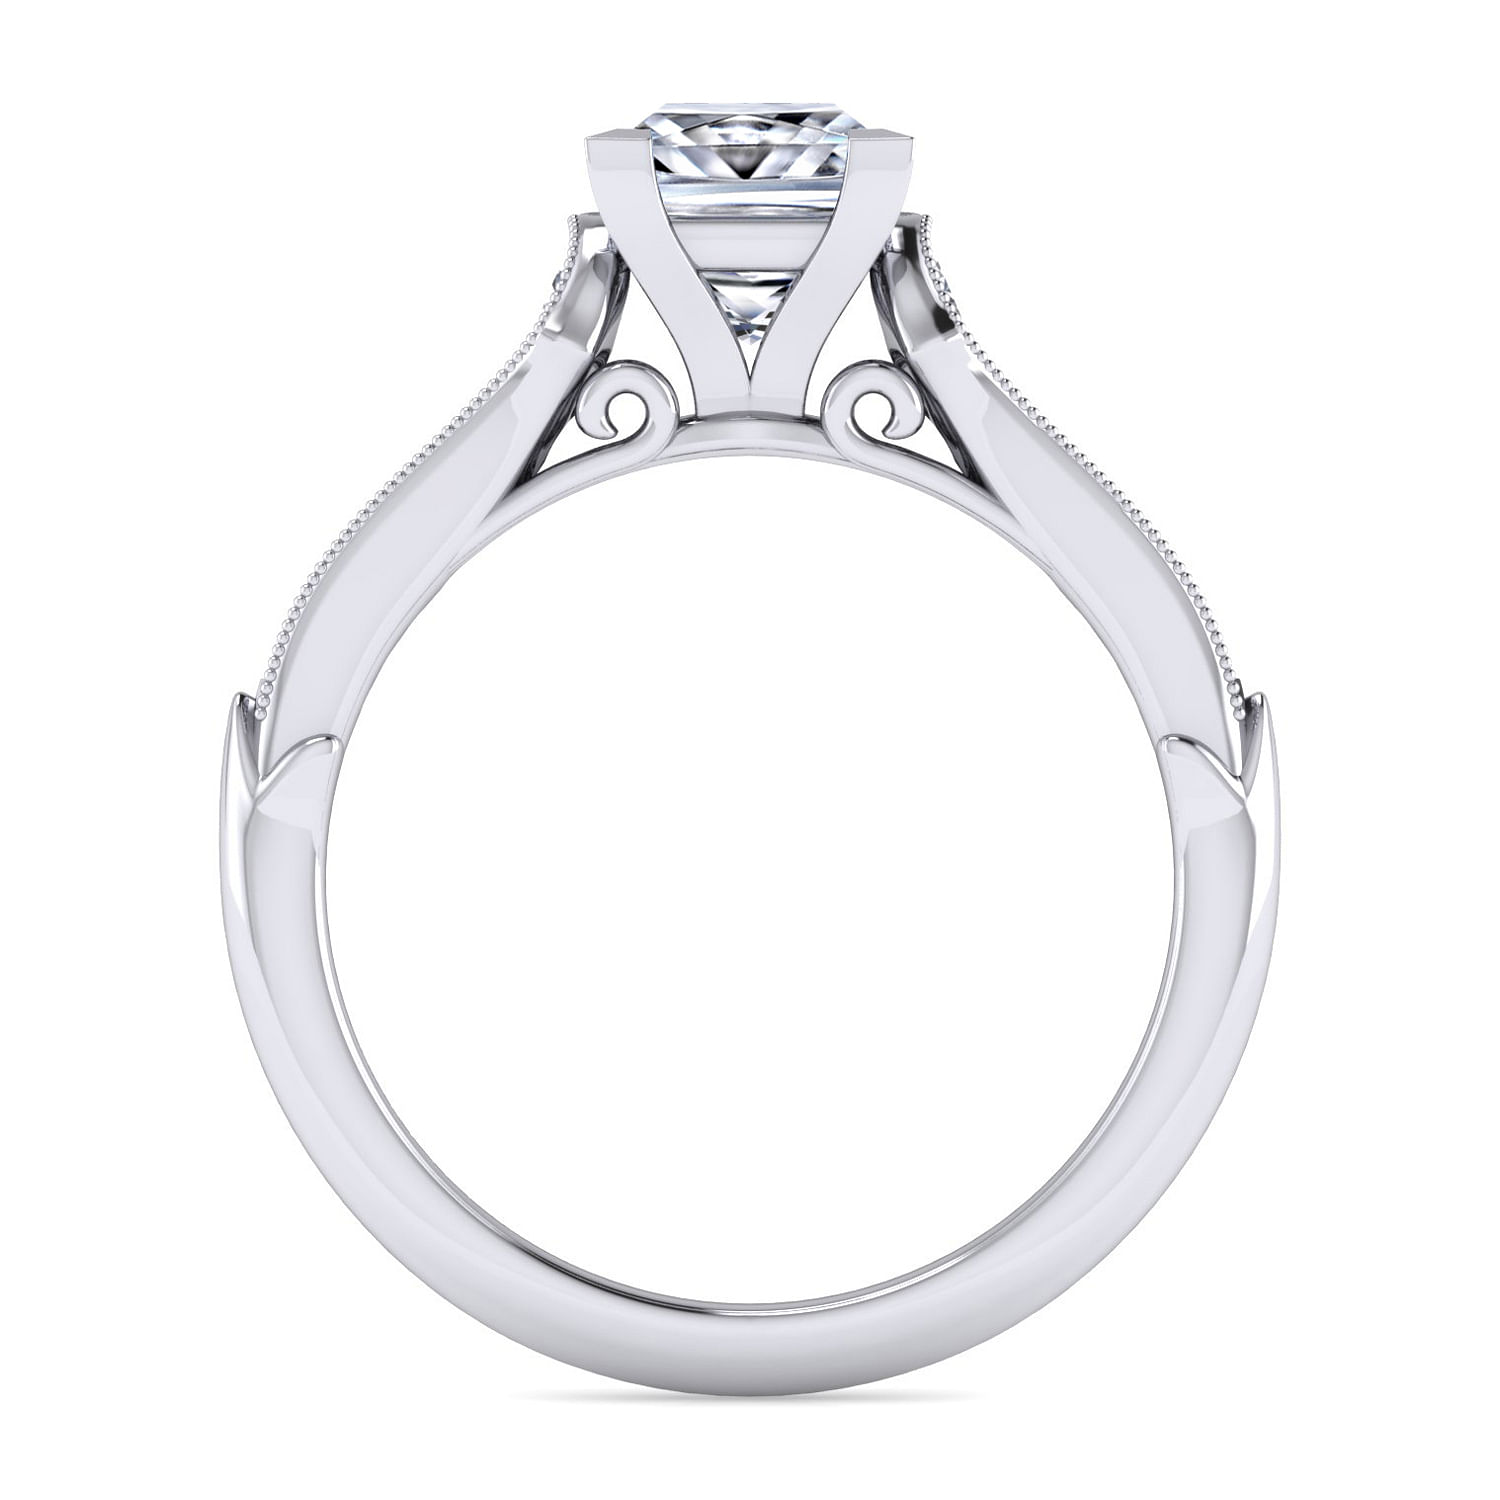 Hollis - 14K White Gold Princess Cut Diamond Engagement Ring - 0.19 ct - Shot 2